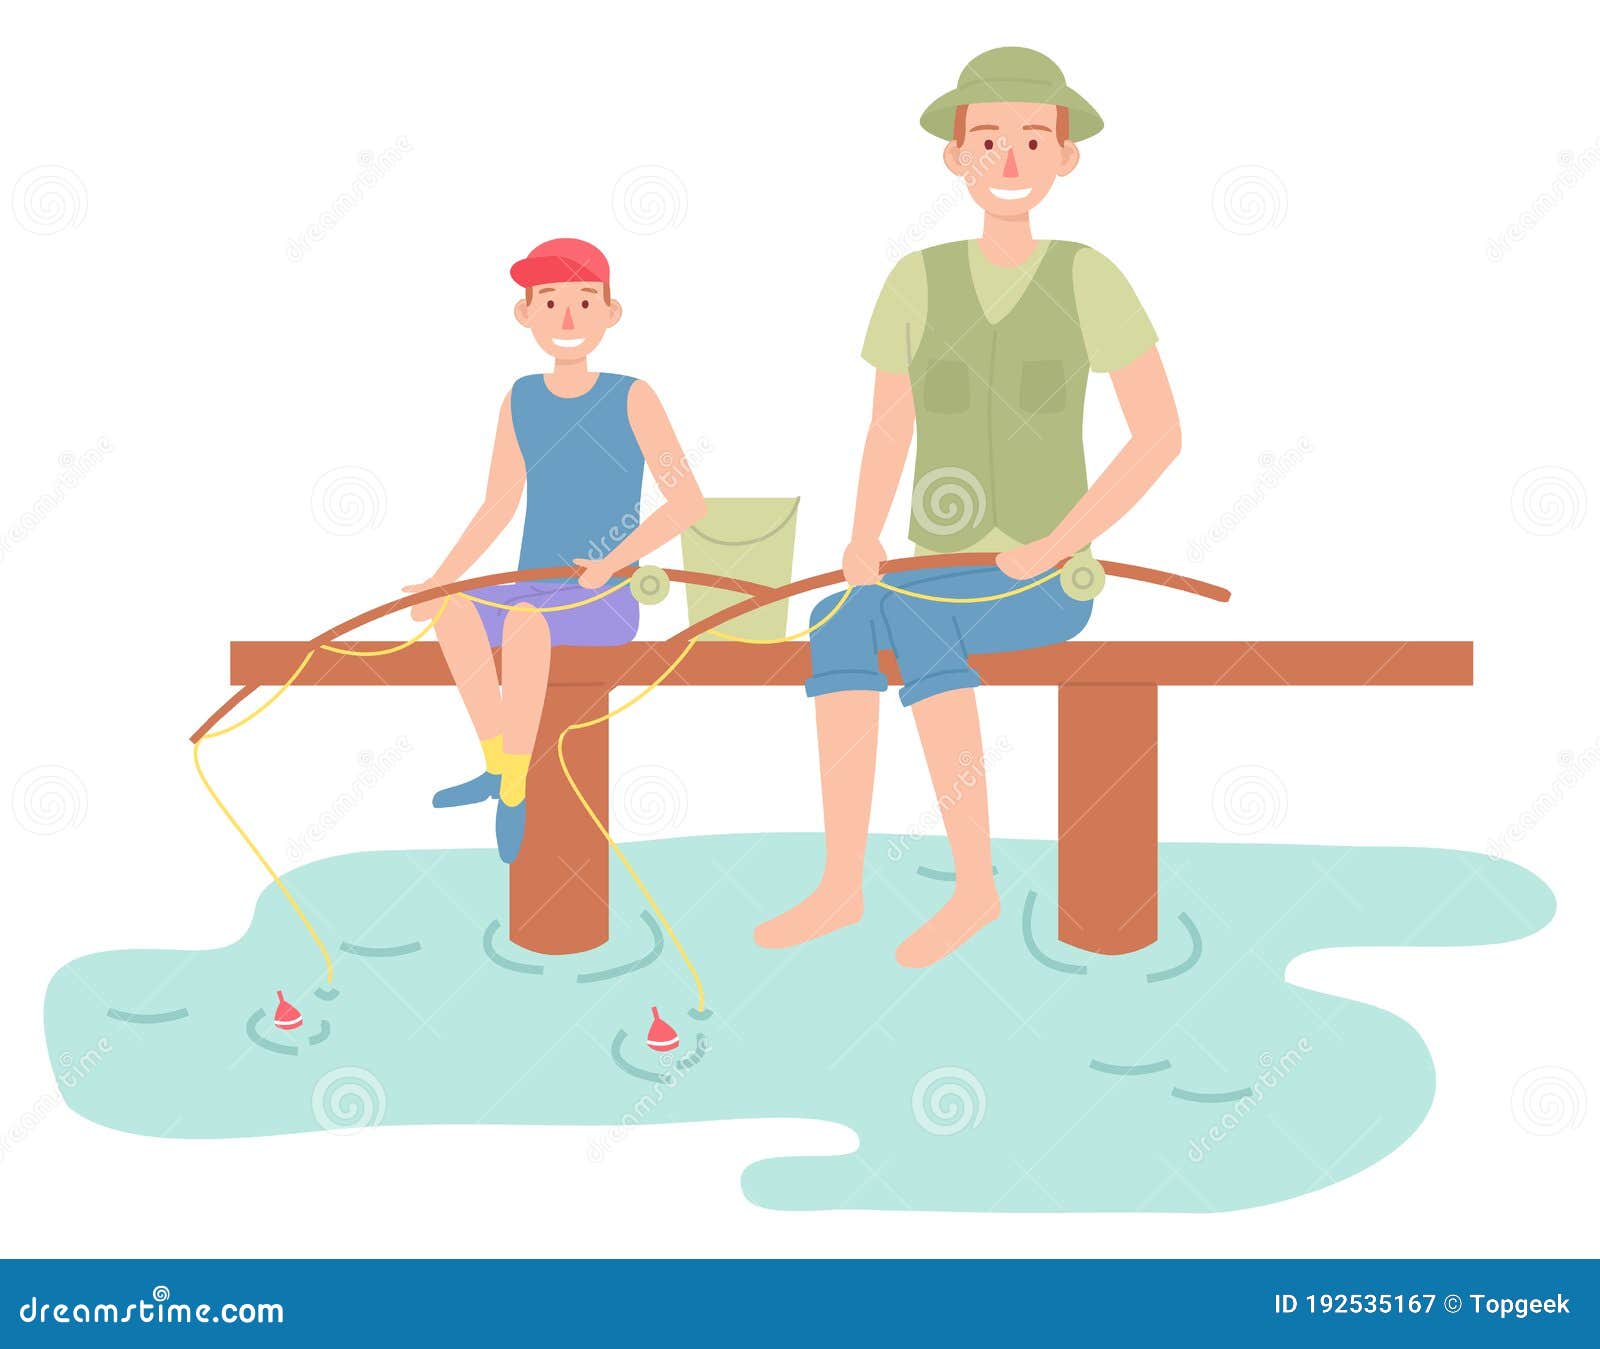 Recreational Outdoor Leisure Activities Fishing Stock Illustrations – 44  Recreational Outdoor Leisure Activities Fishing Stock Illustrations, Vectors  \u0026 Clipart - Dreamstime